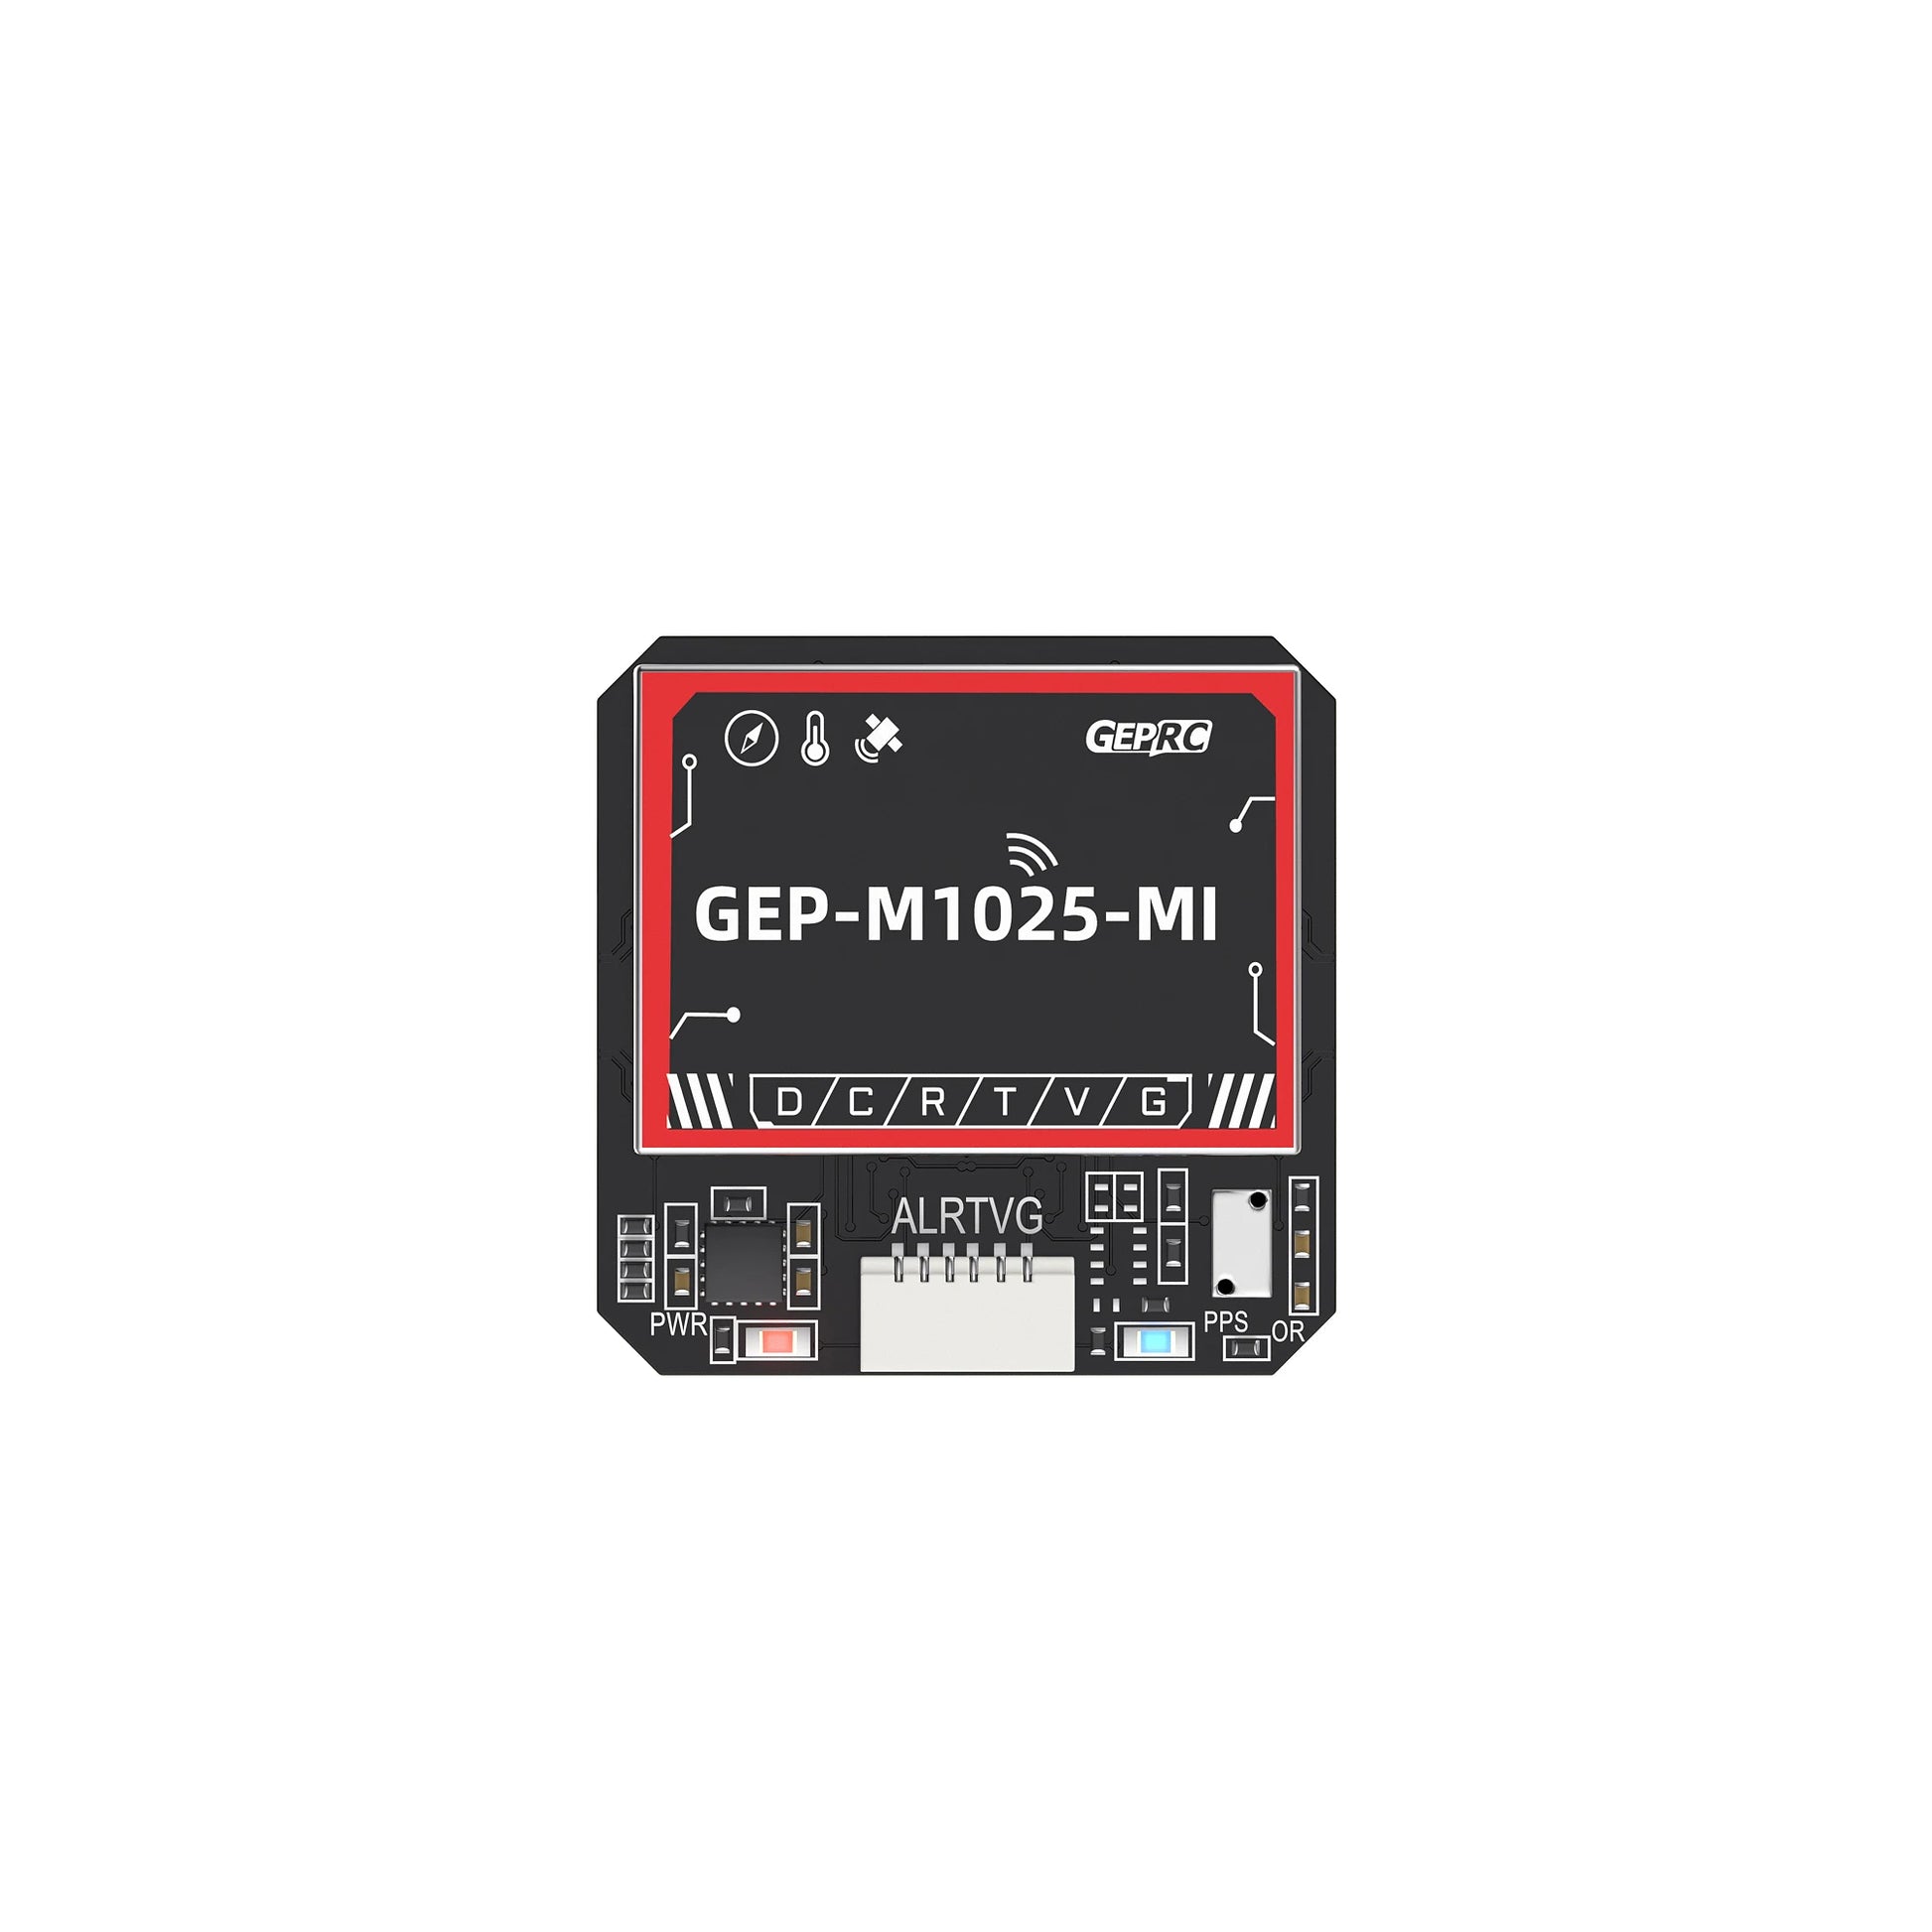 GEPRC GEP-M1025 Series, GEPRC GEP-M1025-MI D/c/R/T/